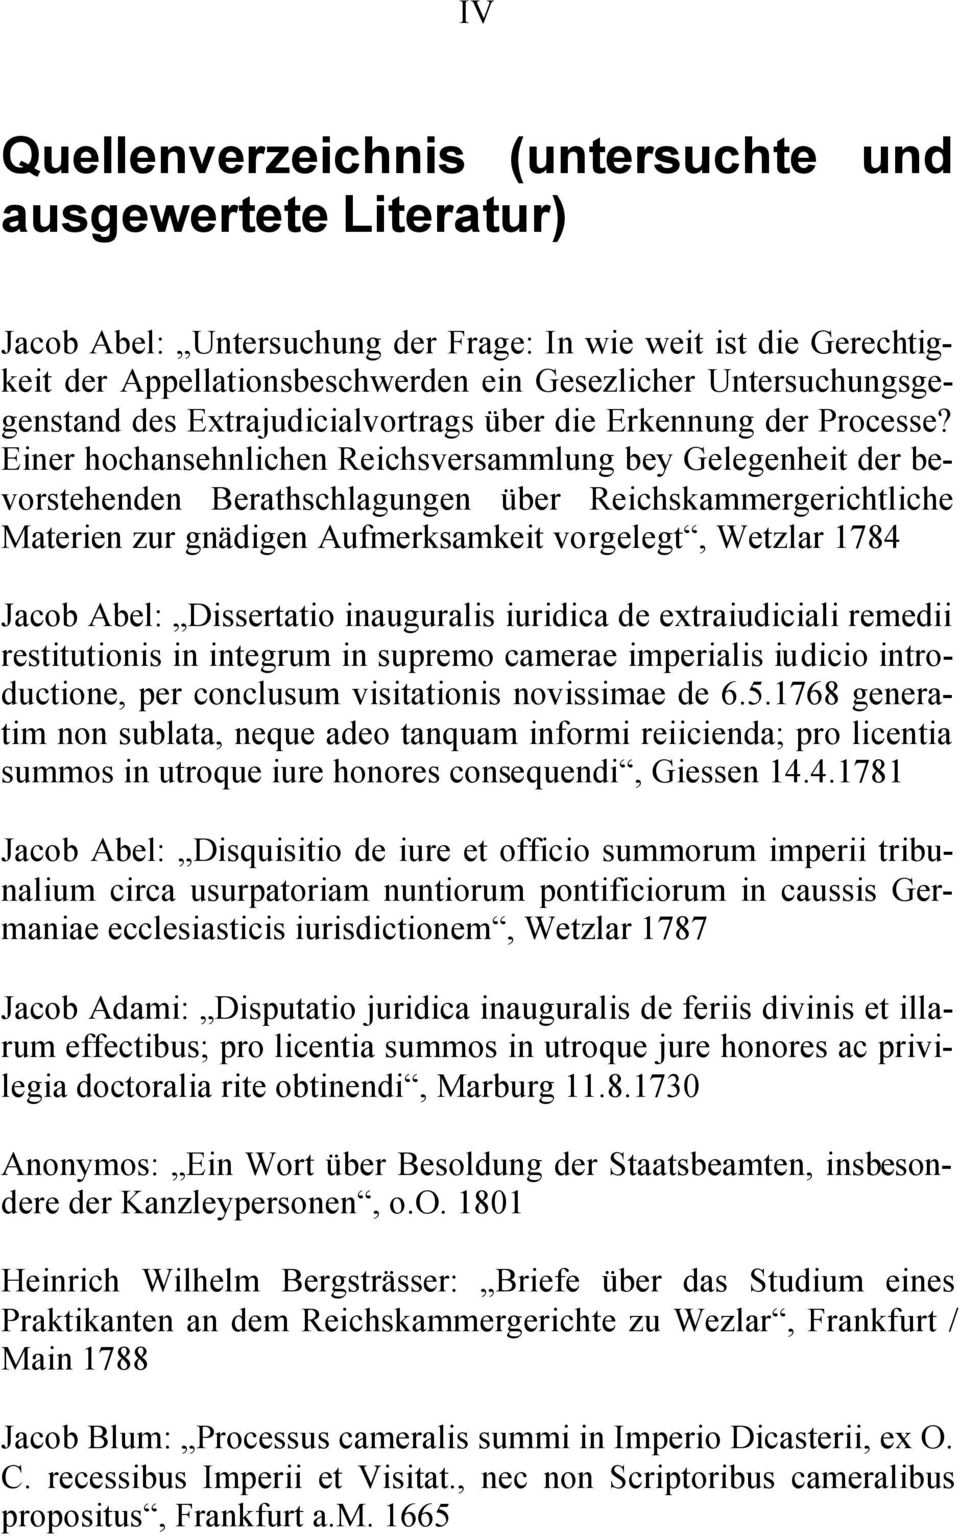 Einer hochansehnlichen Reichsversammlung bey Gelegenheit der bevorstehenden Berathschlagungen über Reichskammergerichtliche Materien zur gnädigen Aufmerksamkeit vorgelegt, Wetzlar 1784 Jacob Abel: